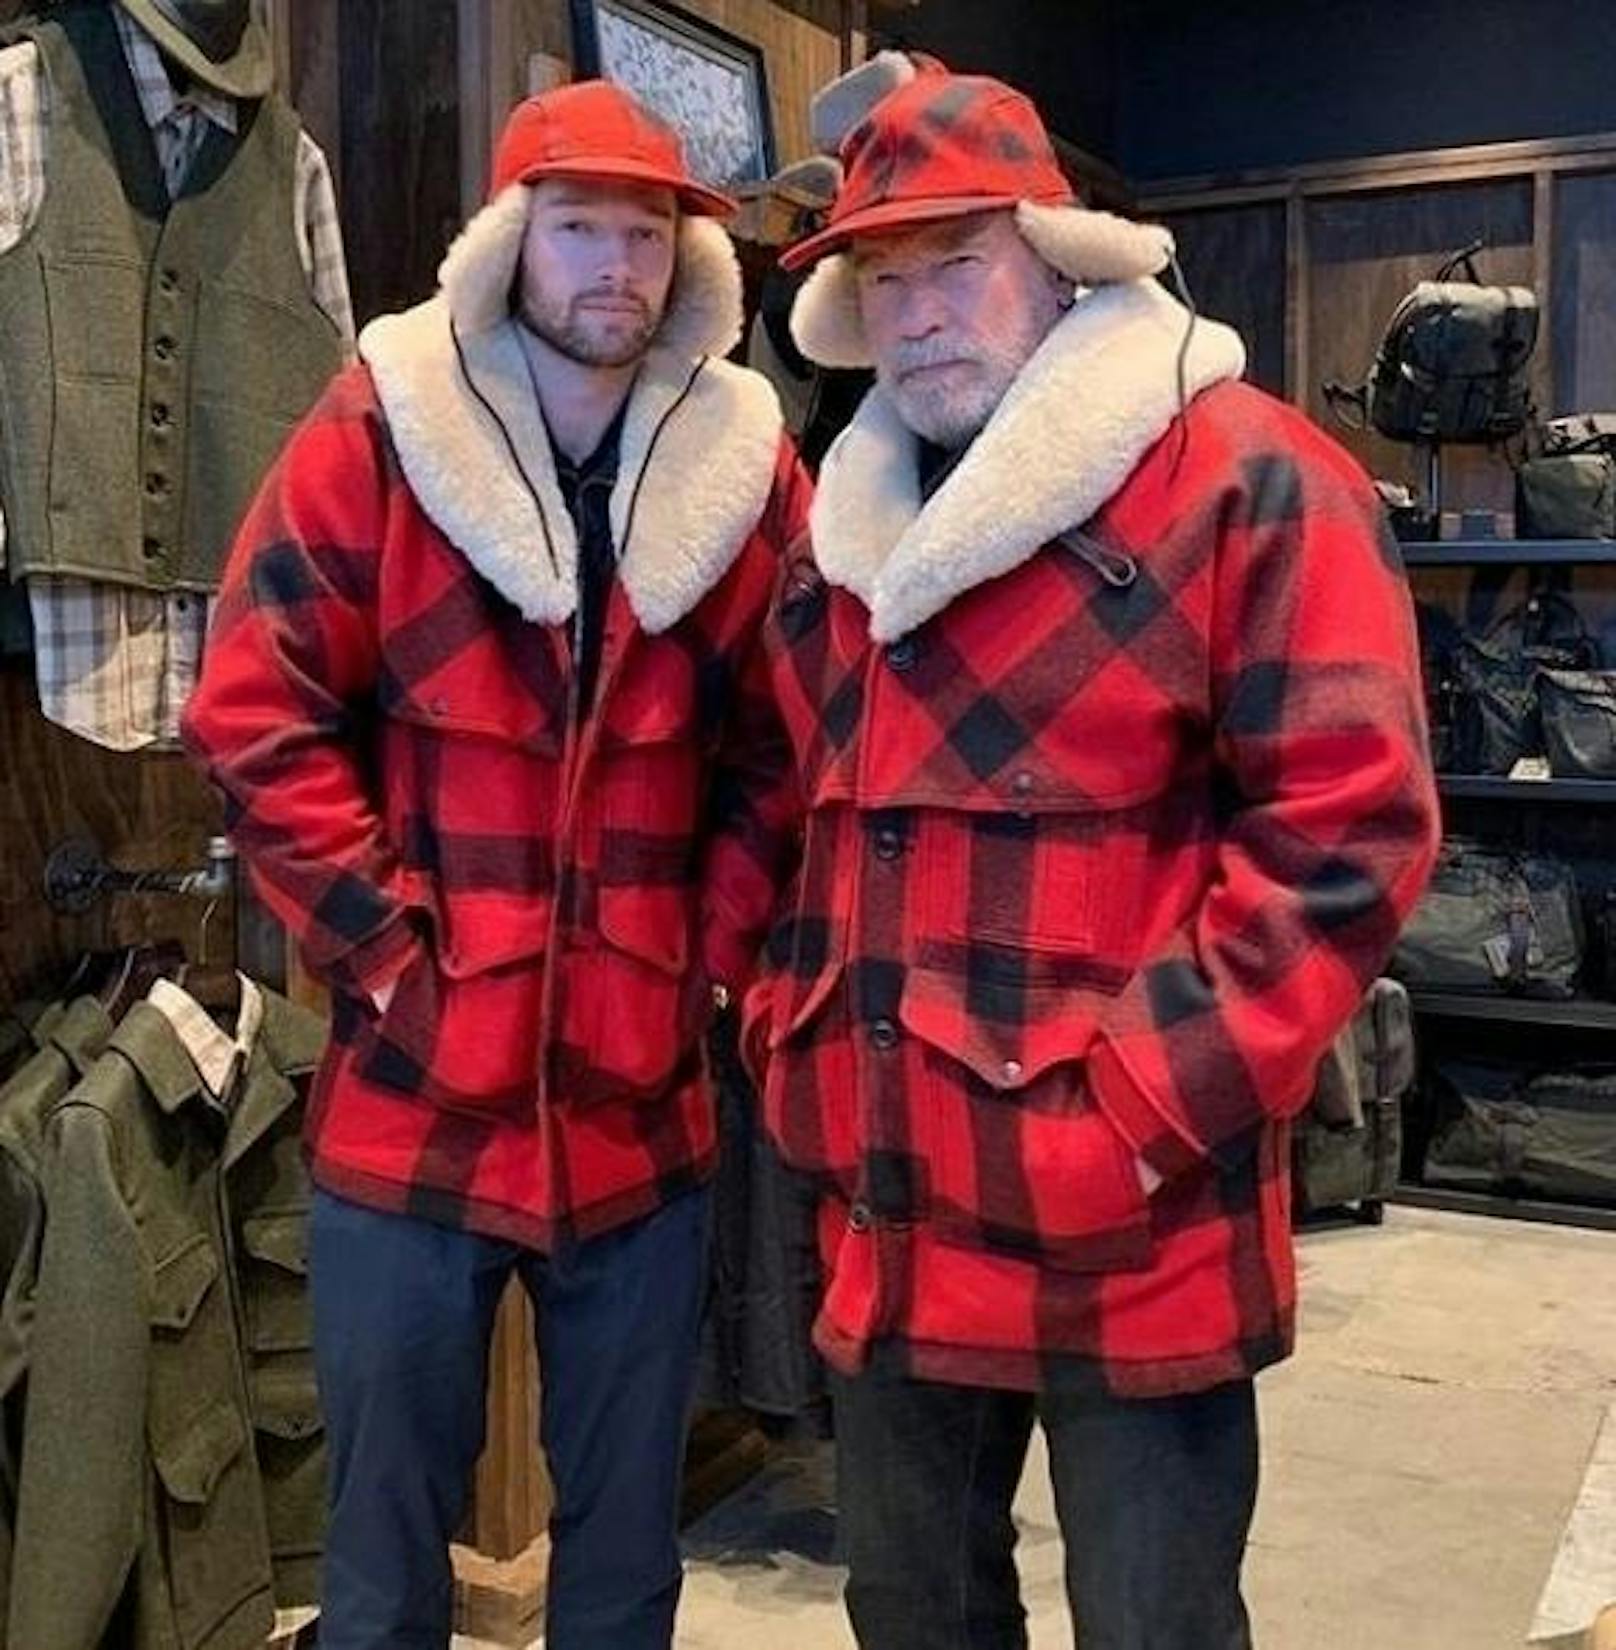 04.03.2019: "Das passiert, wenn Patrick und ich gemeinsam einkaufen gehen", schreibt Arnold Schwarzenegger zu diesem Schnappschuss, der ihn und seinen Sohn in identischen Winter-Outfits zeigt.